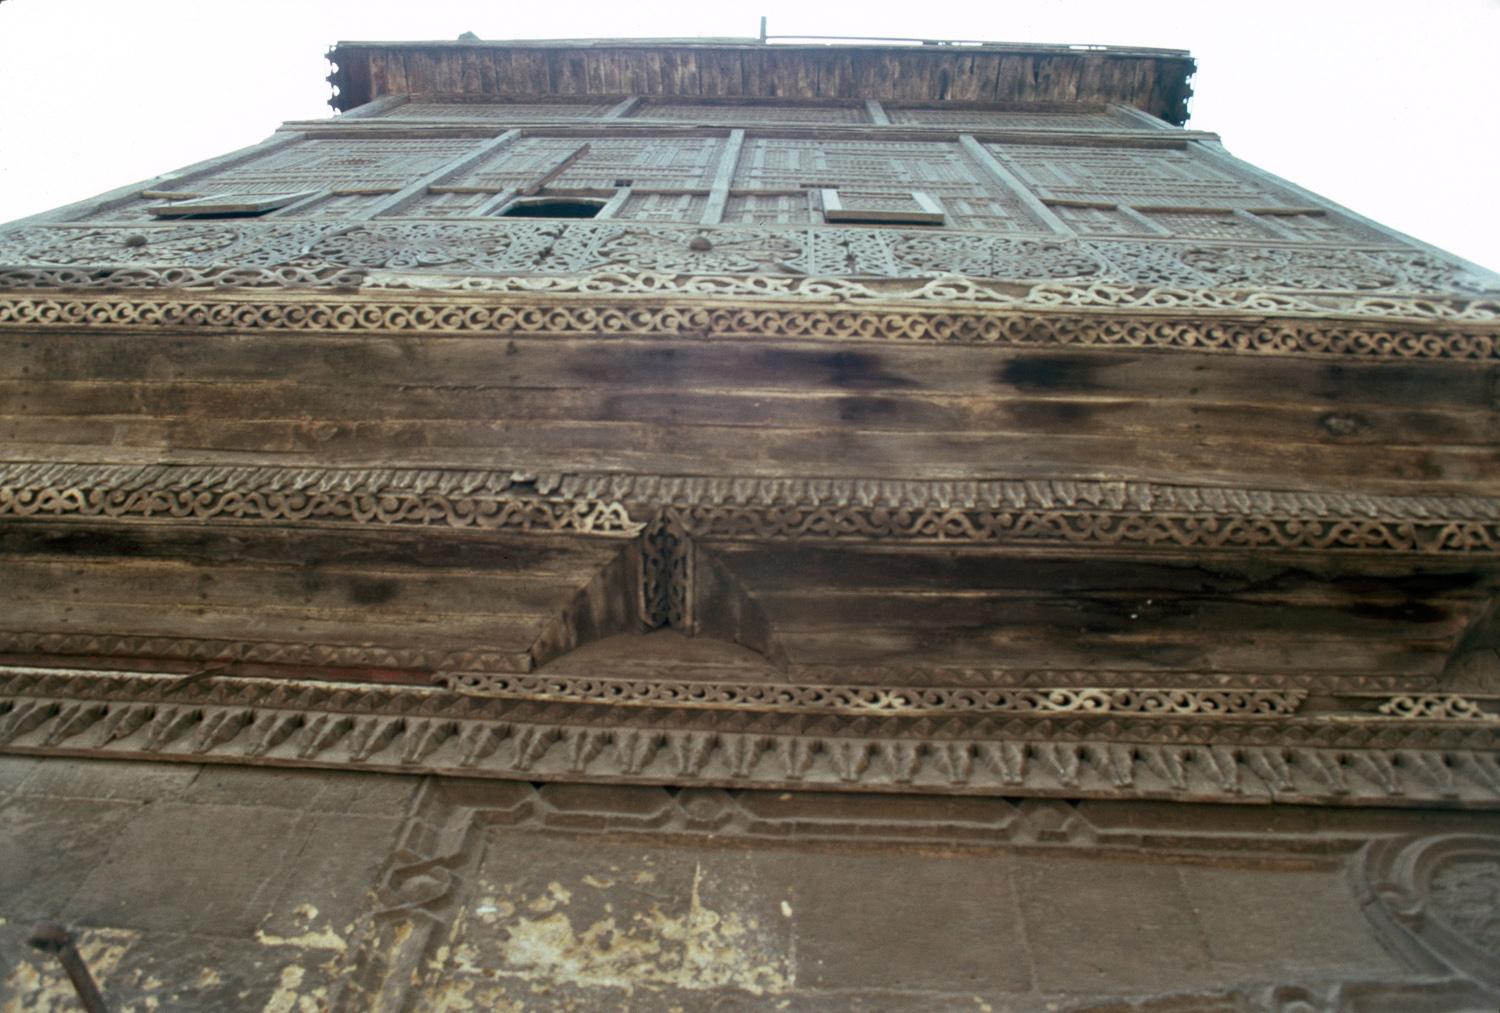 Mashrabiyya of Great Reception Hall (qa'a) overlooking Harat-Monge